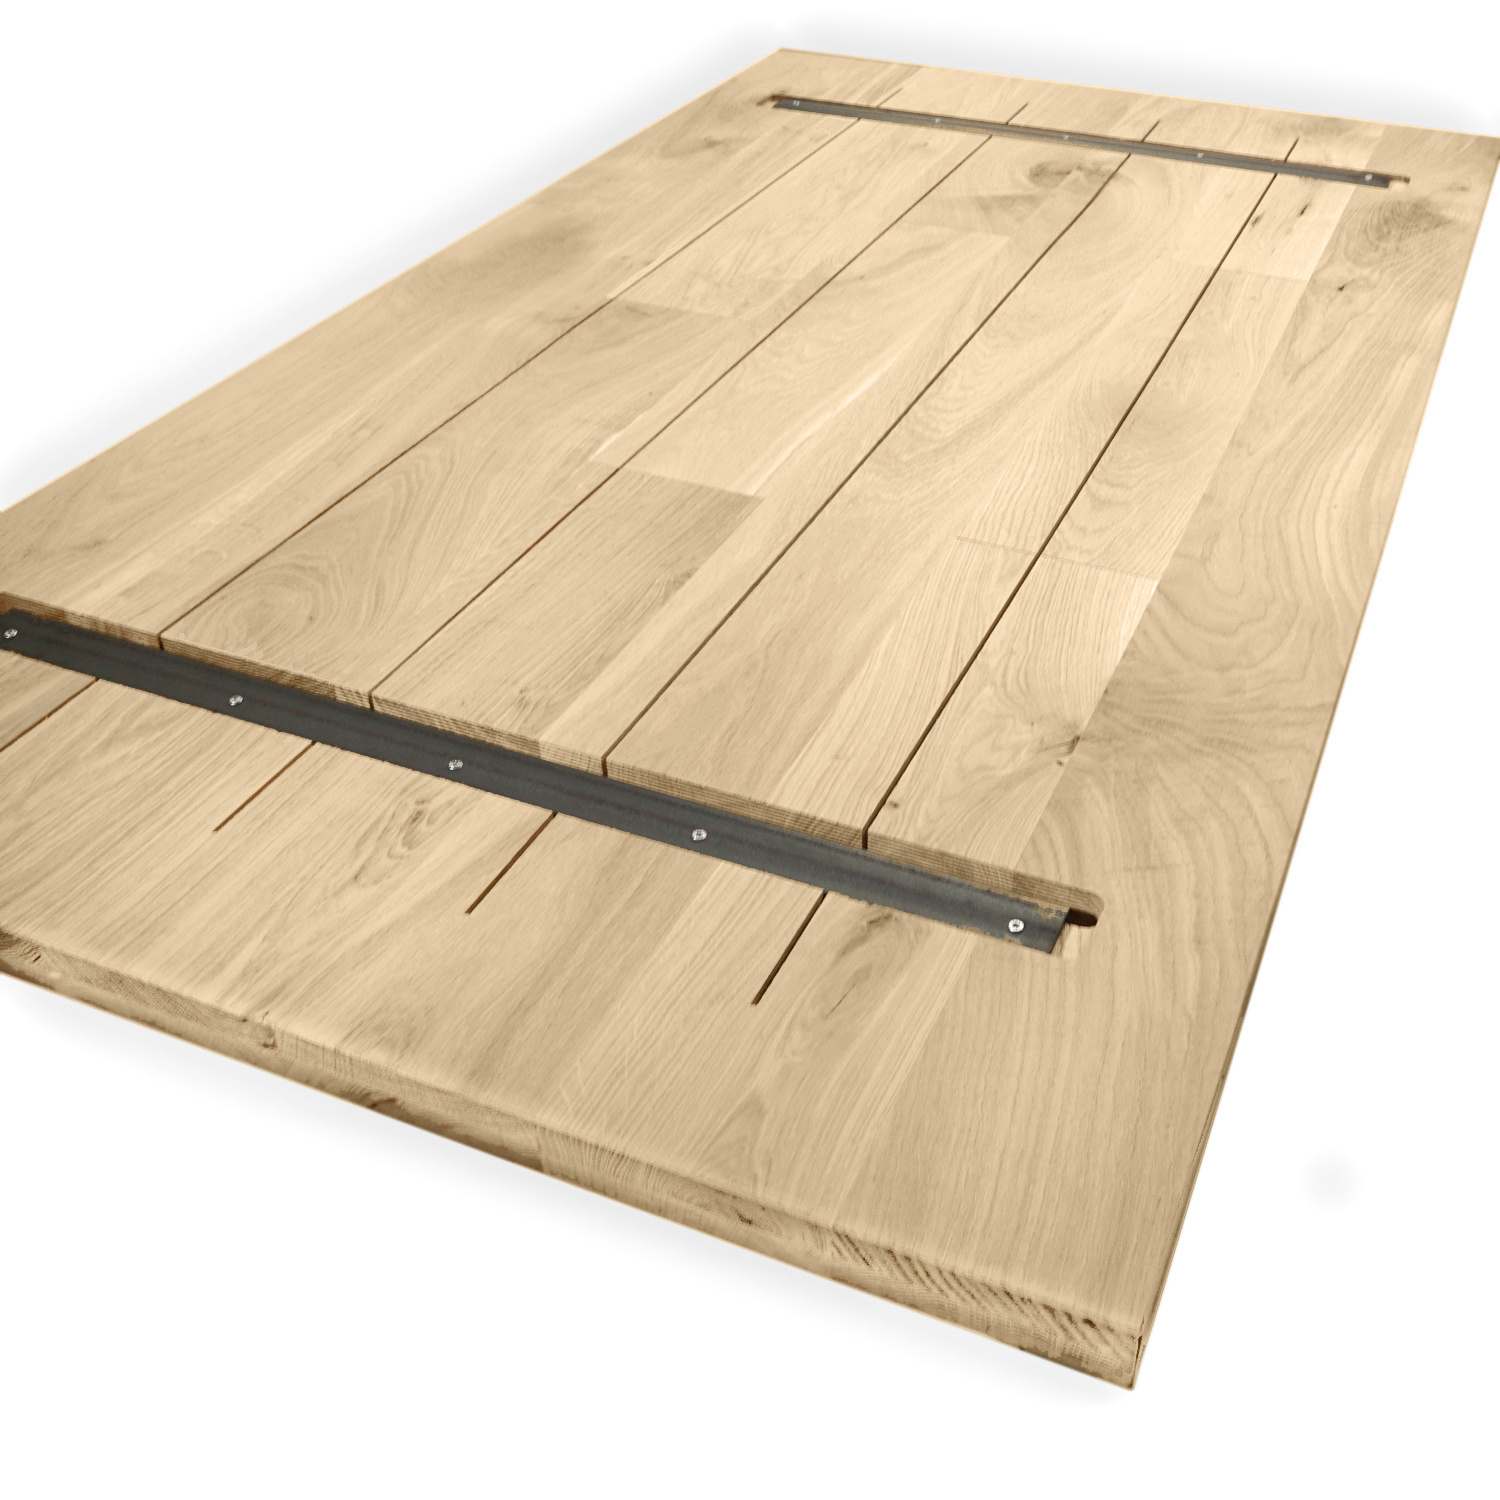  Eiken tafelblad op maat - 2,5 cm dik (1-laag) - rustiek Europees eikenhout - verlijmd kd 8-12% - 50-120x50-350 cm